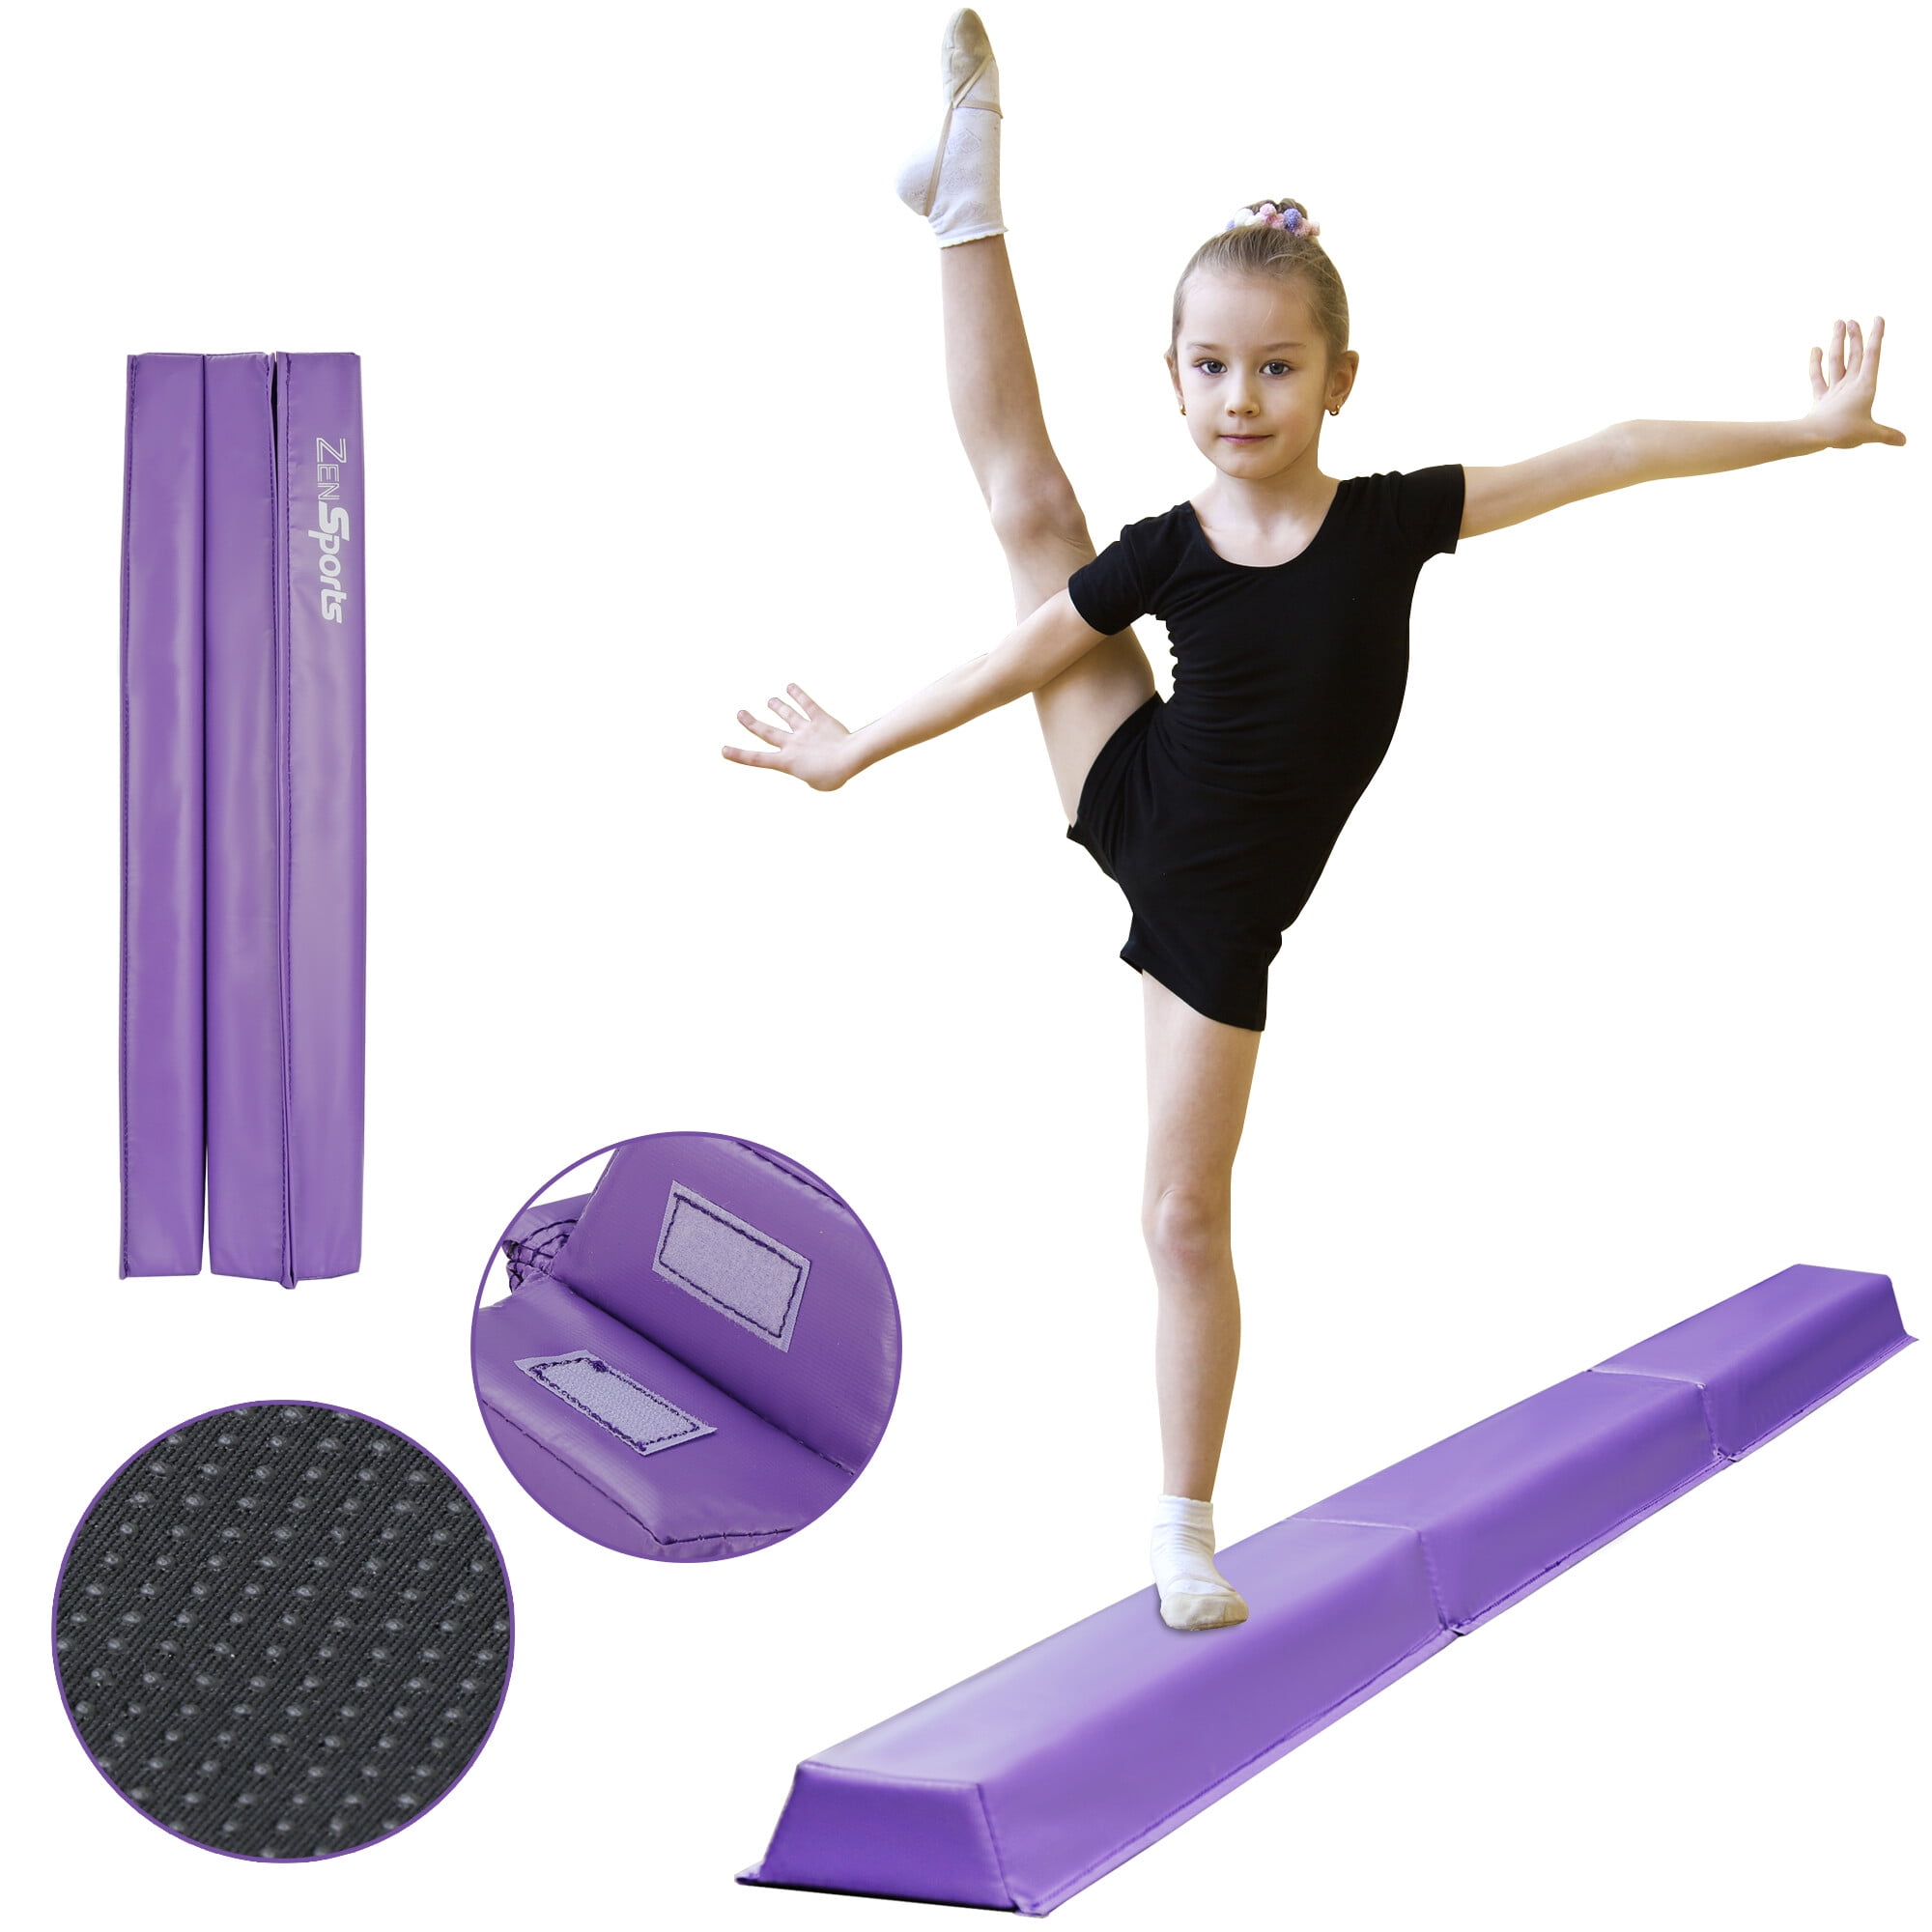 Springee 8ft Adjustable Balance Beam Gymnastics Equipment for Home for sale online 